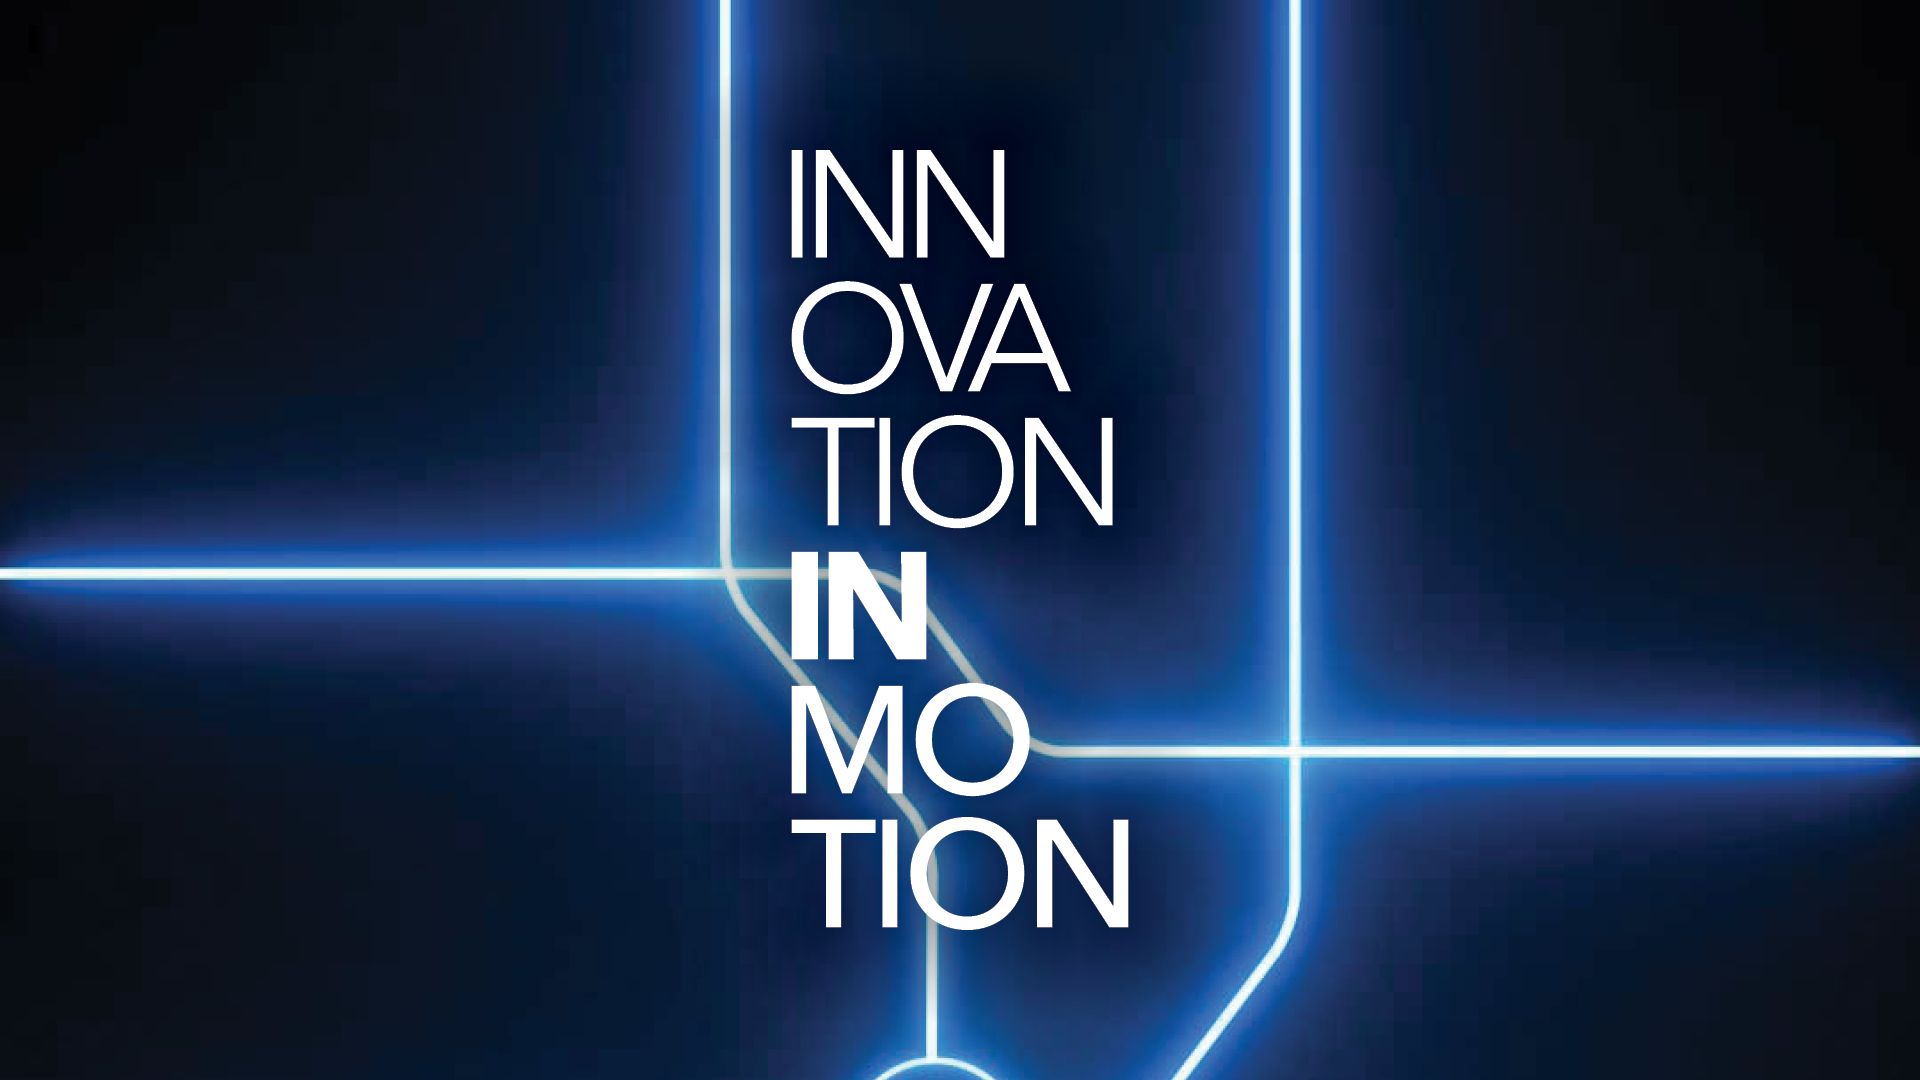  Card  com a identidade visual da exposição Innovation in Motion